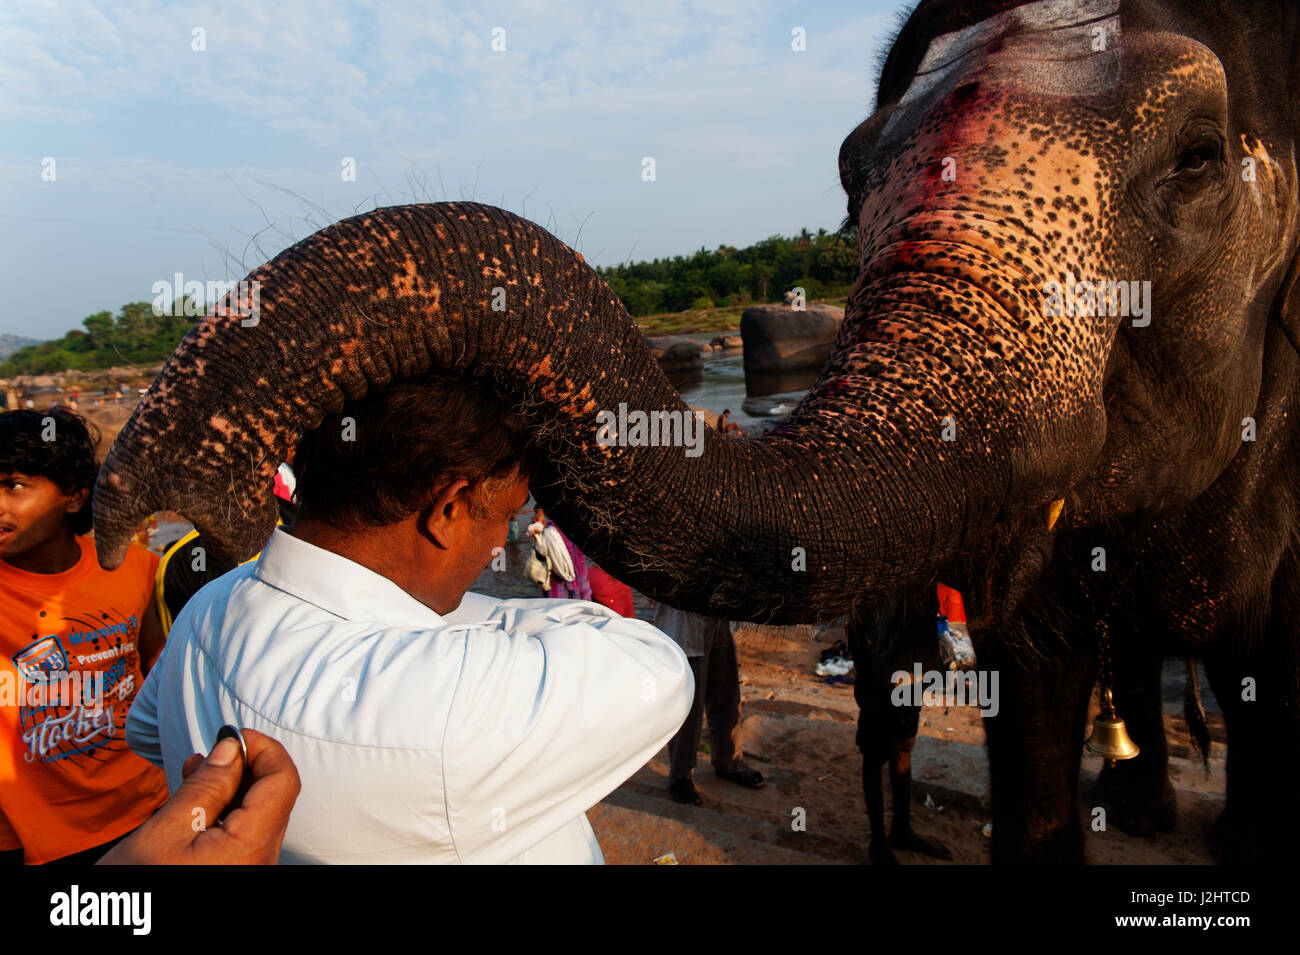 Laxmi the elephant blessing a man at Tungabhadra river, Hampi, Karnataka, India Stock Photo